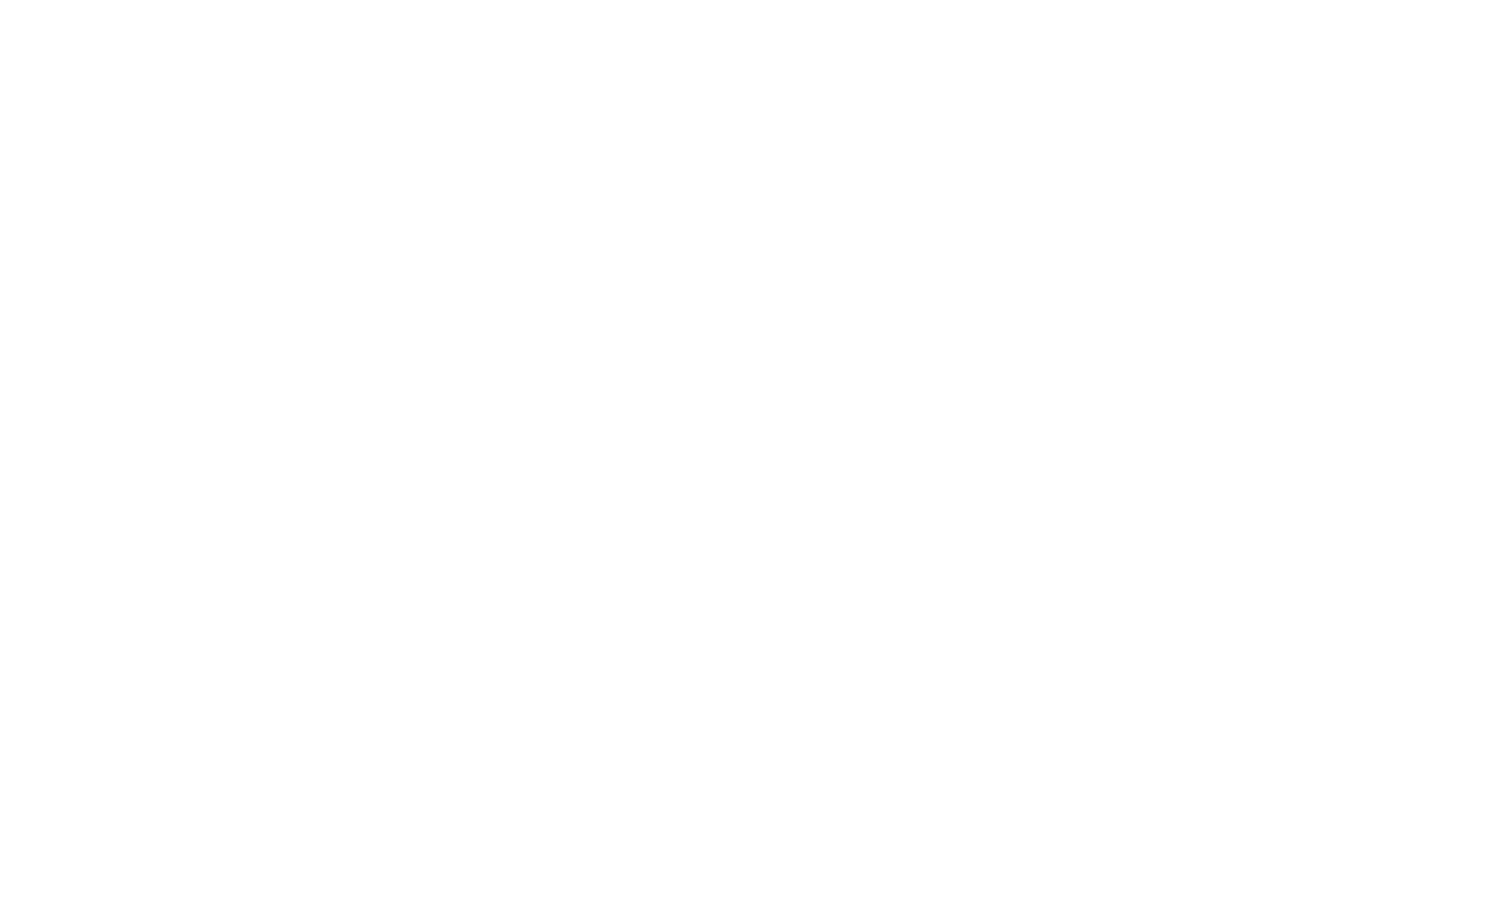 Mejuri logo in white